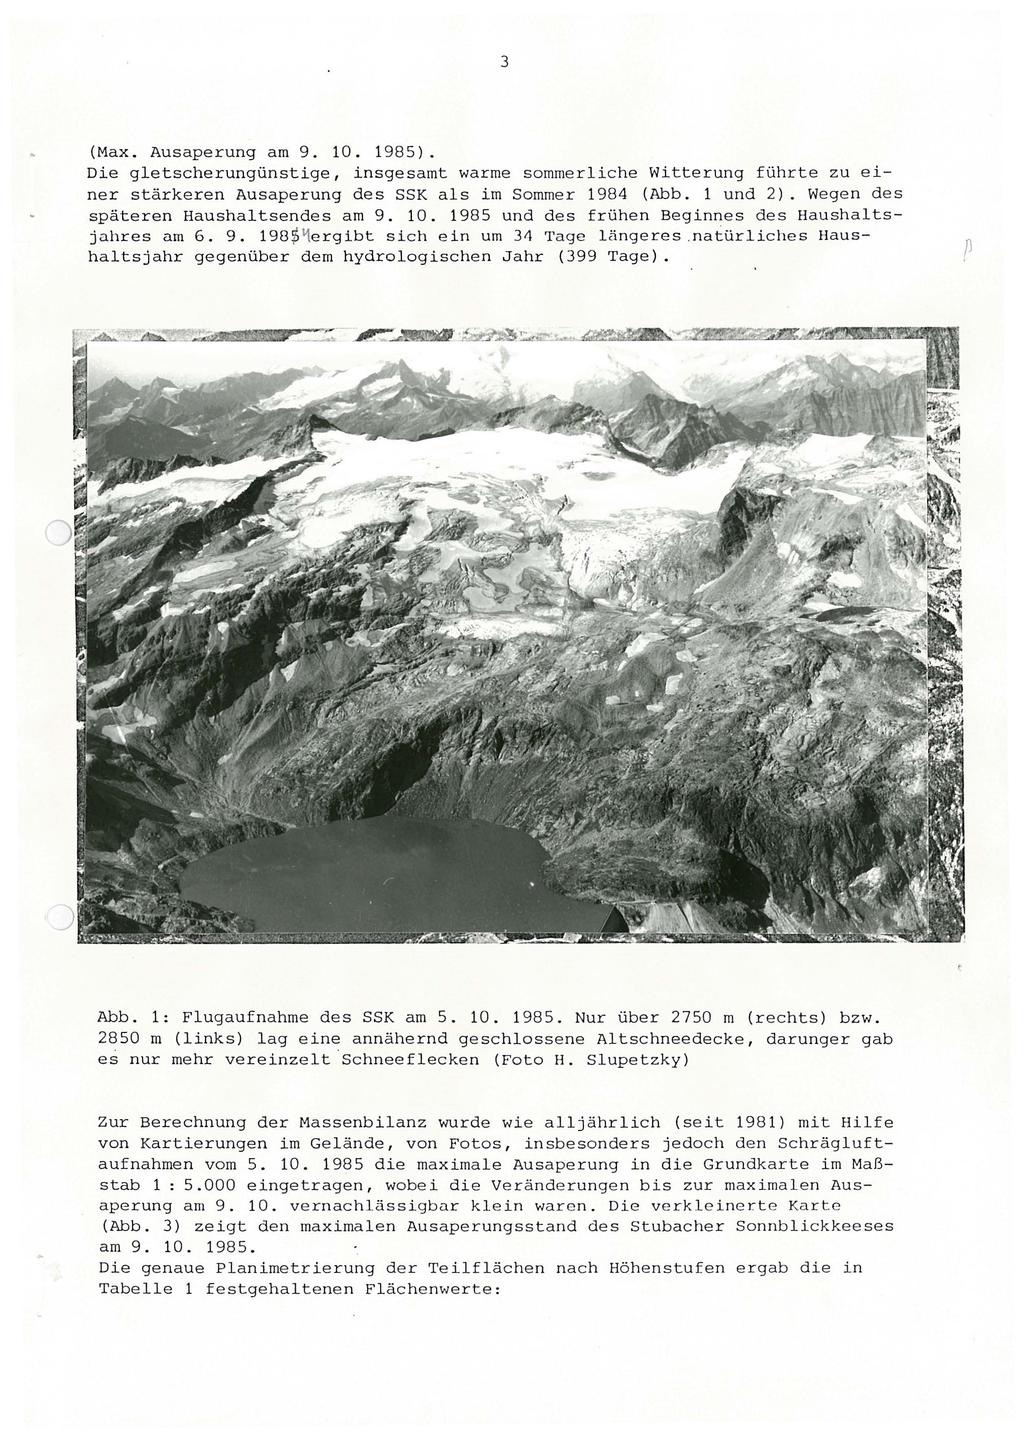 3 (Max. Ausaperung am 9. 10. 1985). Die gletscherungünstige, insgesamt warme sommerliche Witterung führte zu einer stärkeren Ausaperung des SSK als im Sommer 1984 (Abb. 1 und 2).